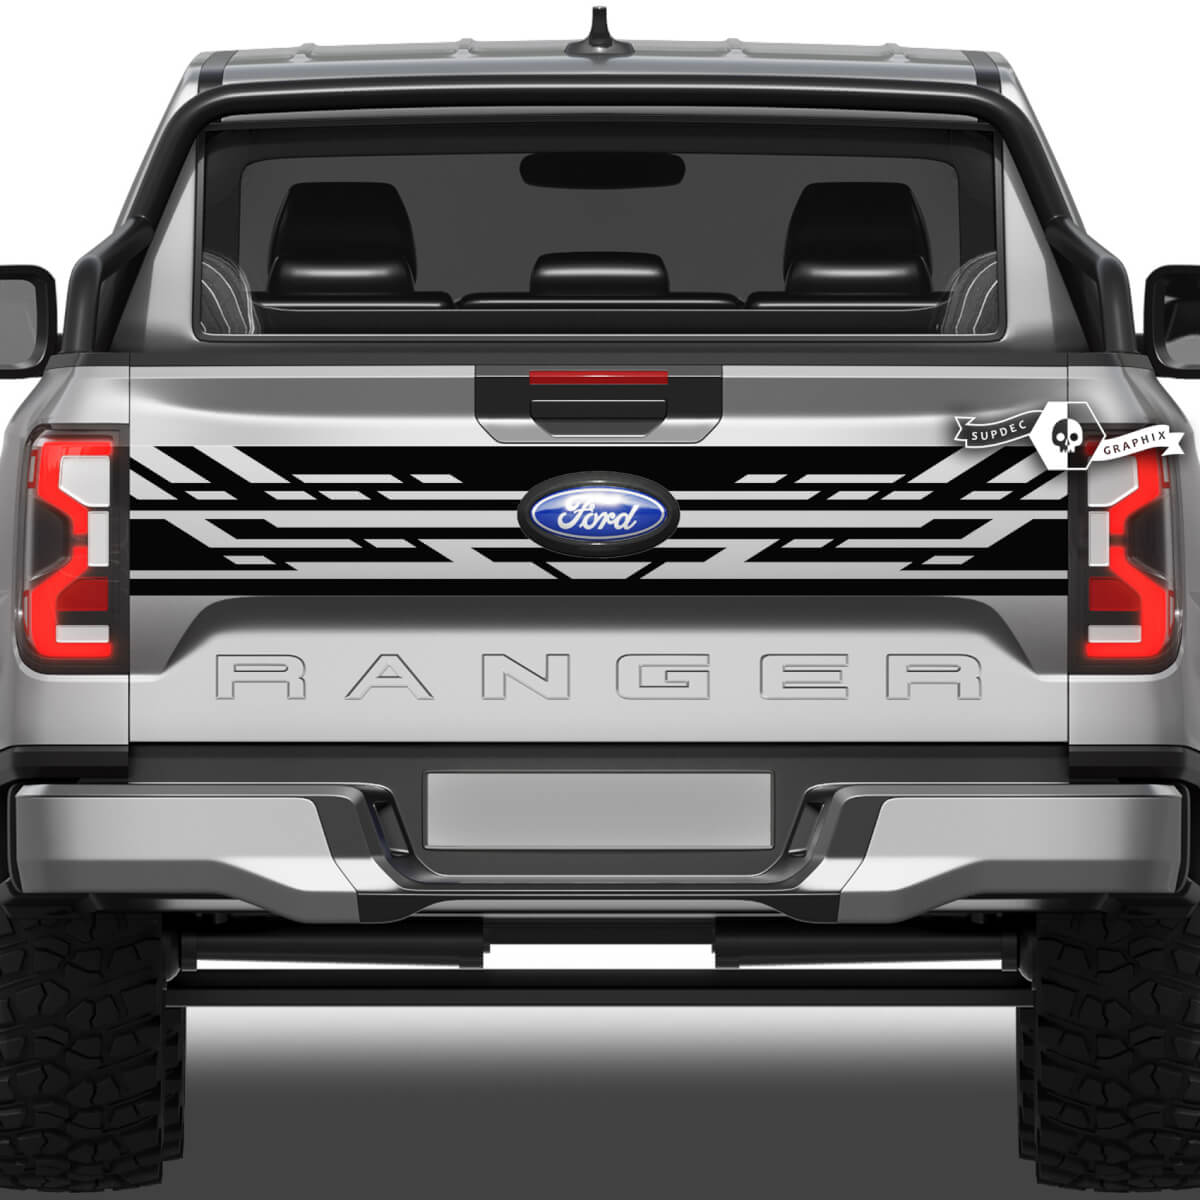 Ford Ranger Mud Splash Wrap Geometría Puerta trasera Cama Lado Vinilo Calcomanías
